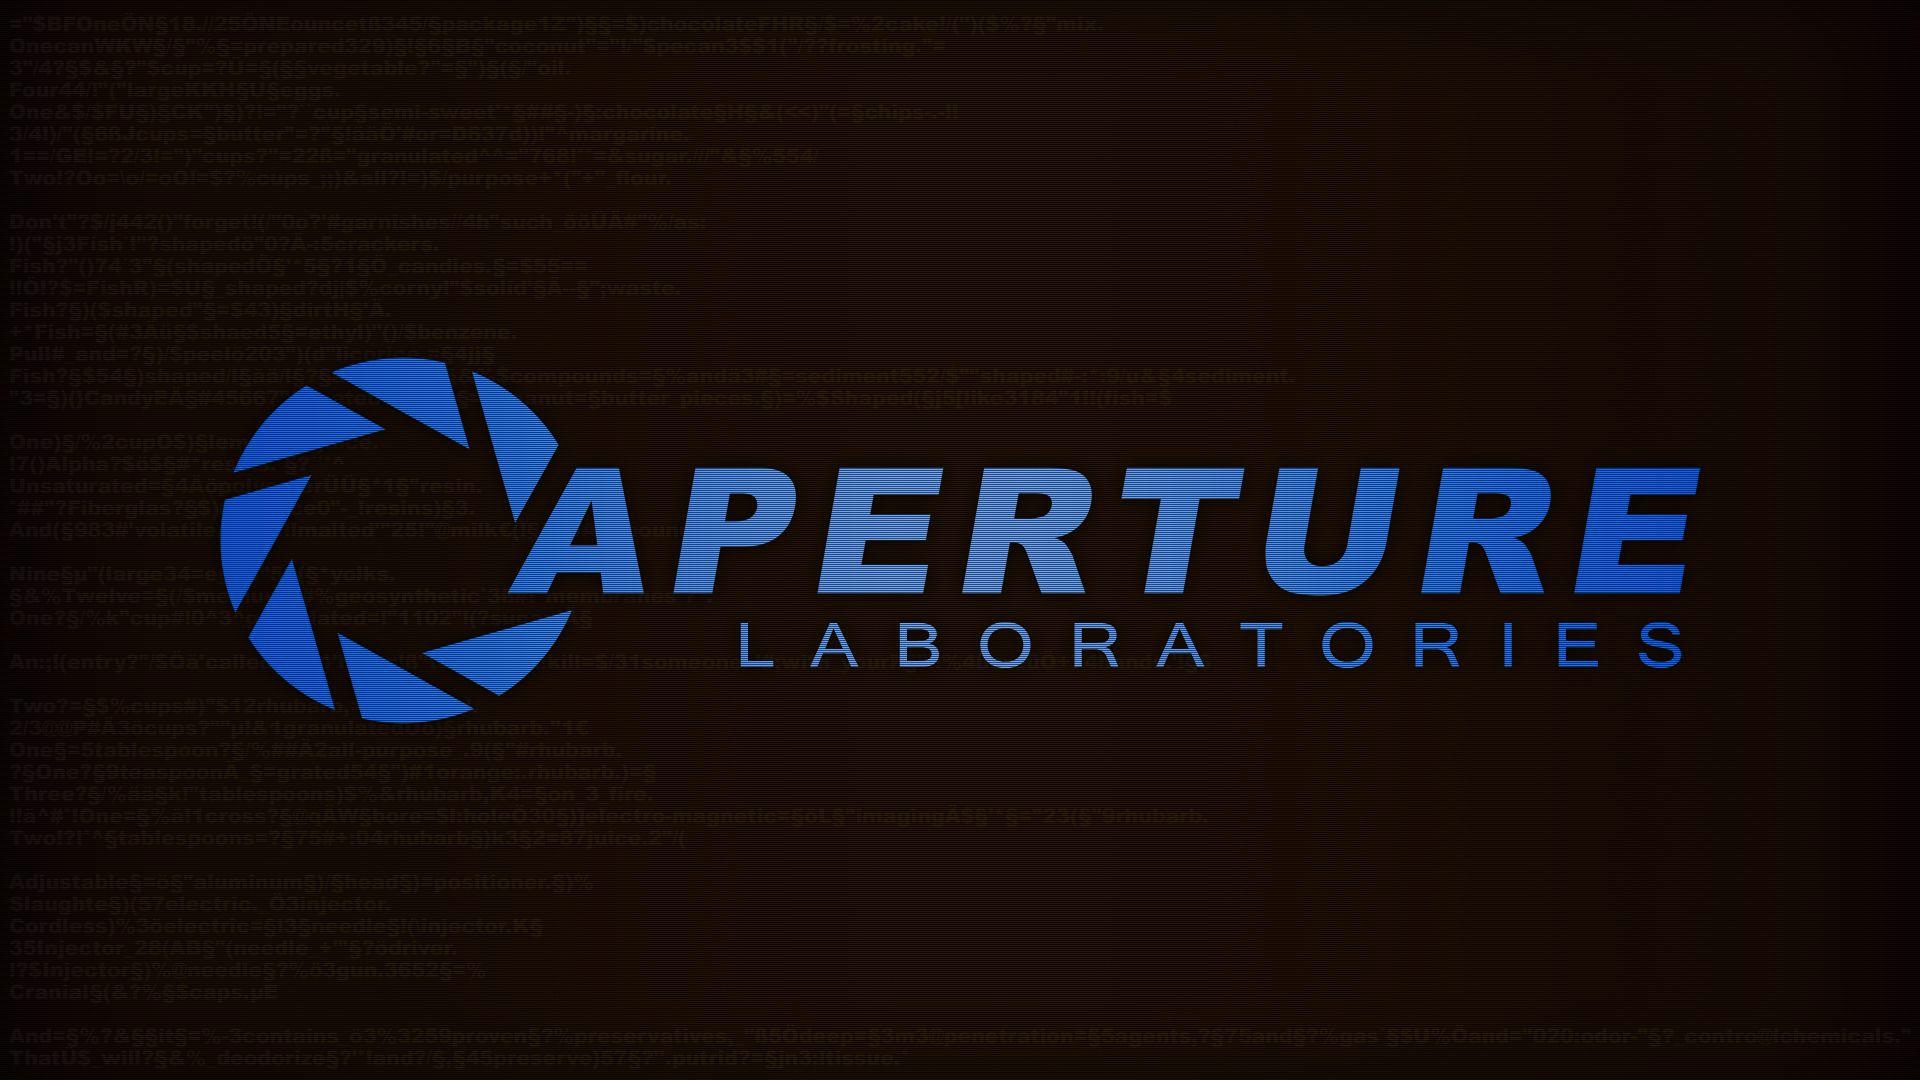 Portal, Aperture Laboratories Wallpaper / WallpaperJam.com